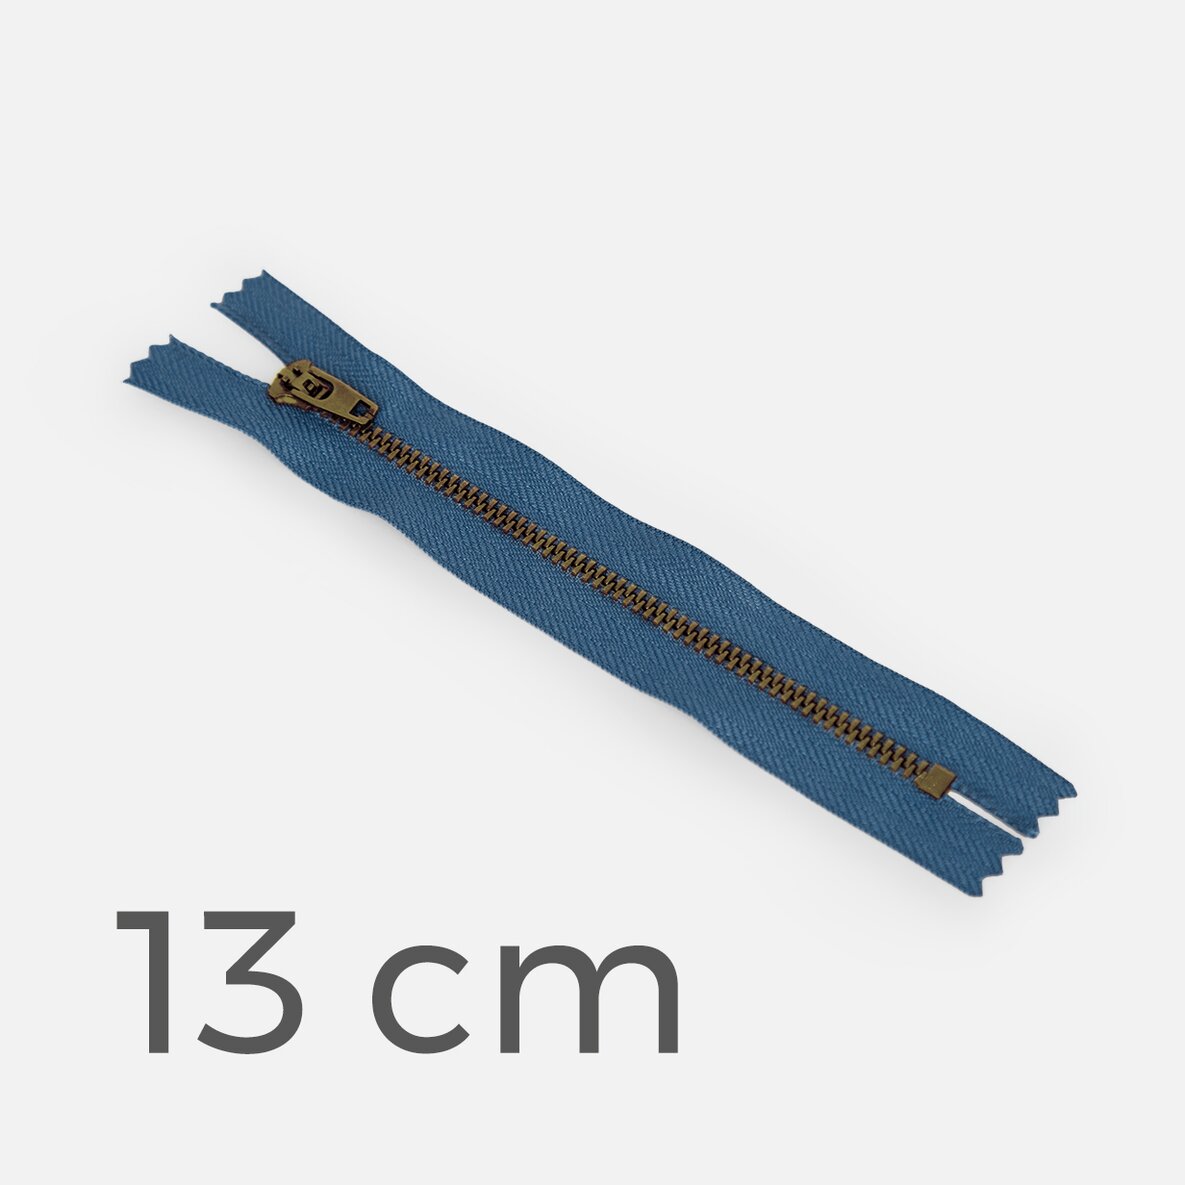 Jeans Reissverschluss Metall messing 13 cm blau